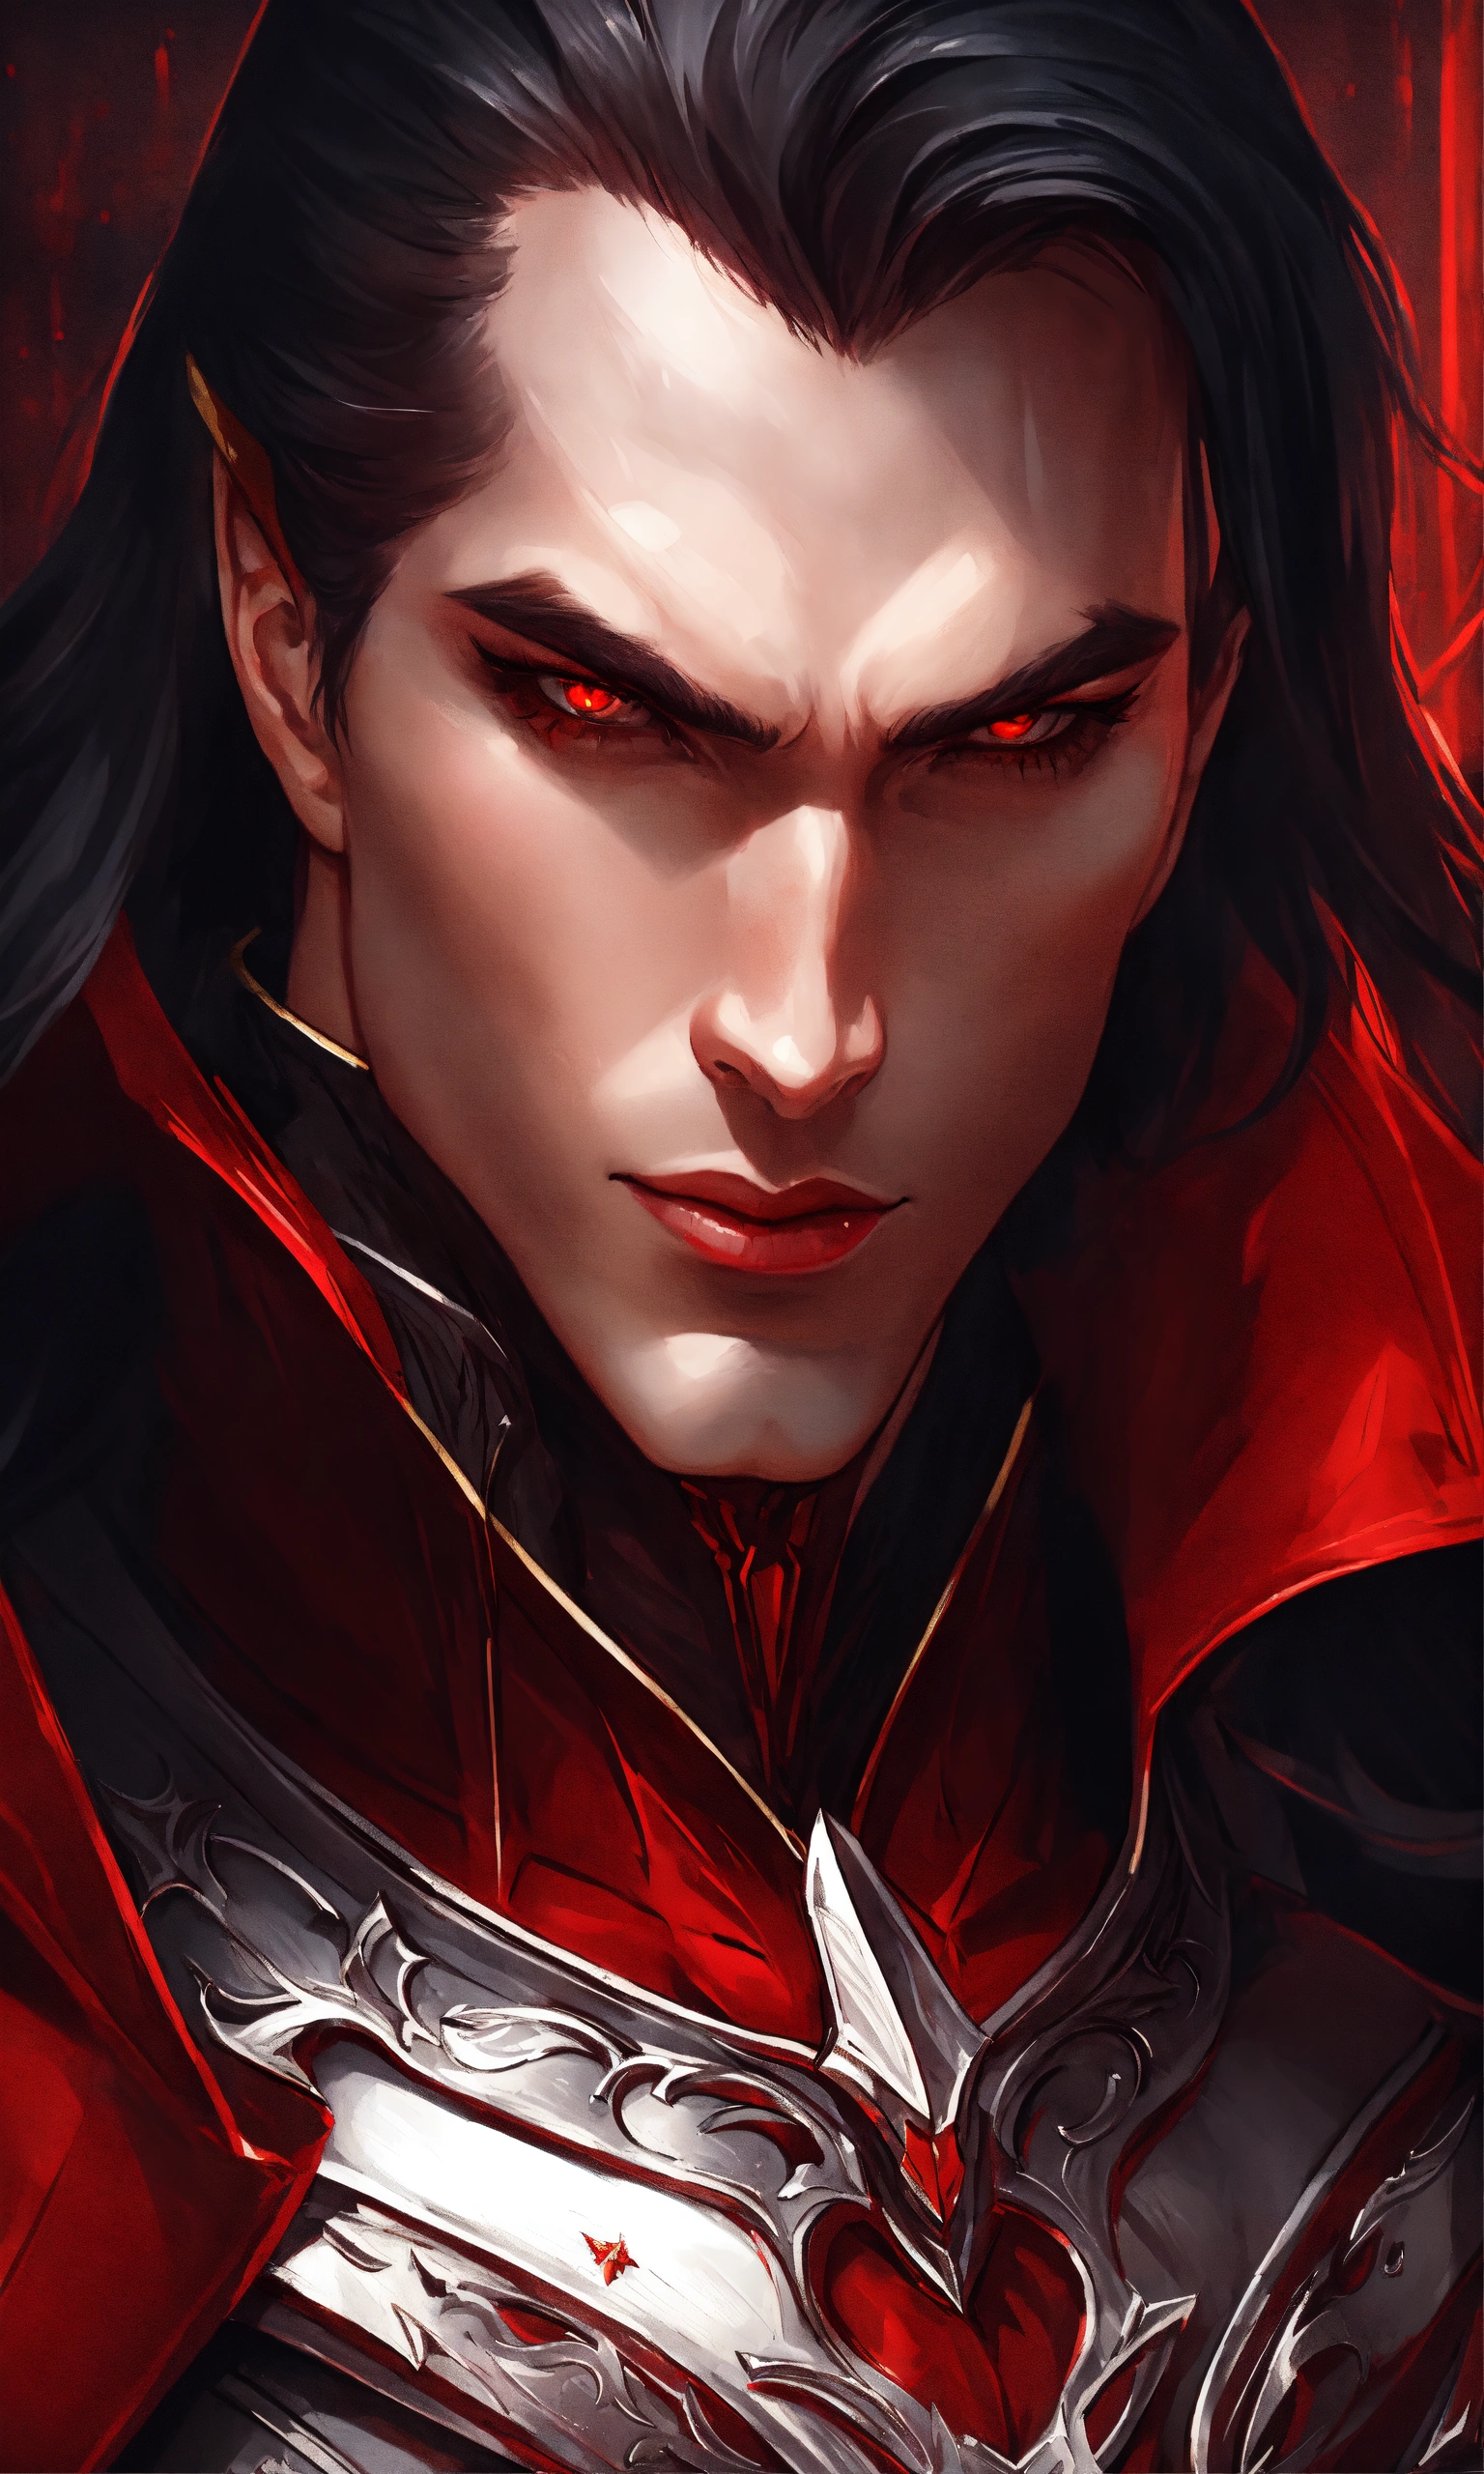 Lexica - Portrait of vlad dracul, intricate crimson armor, cape ...